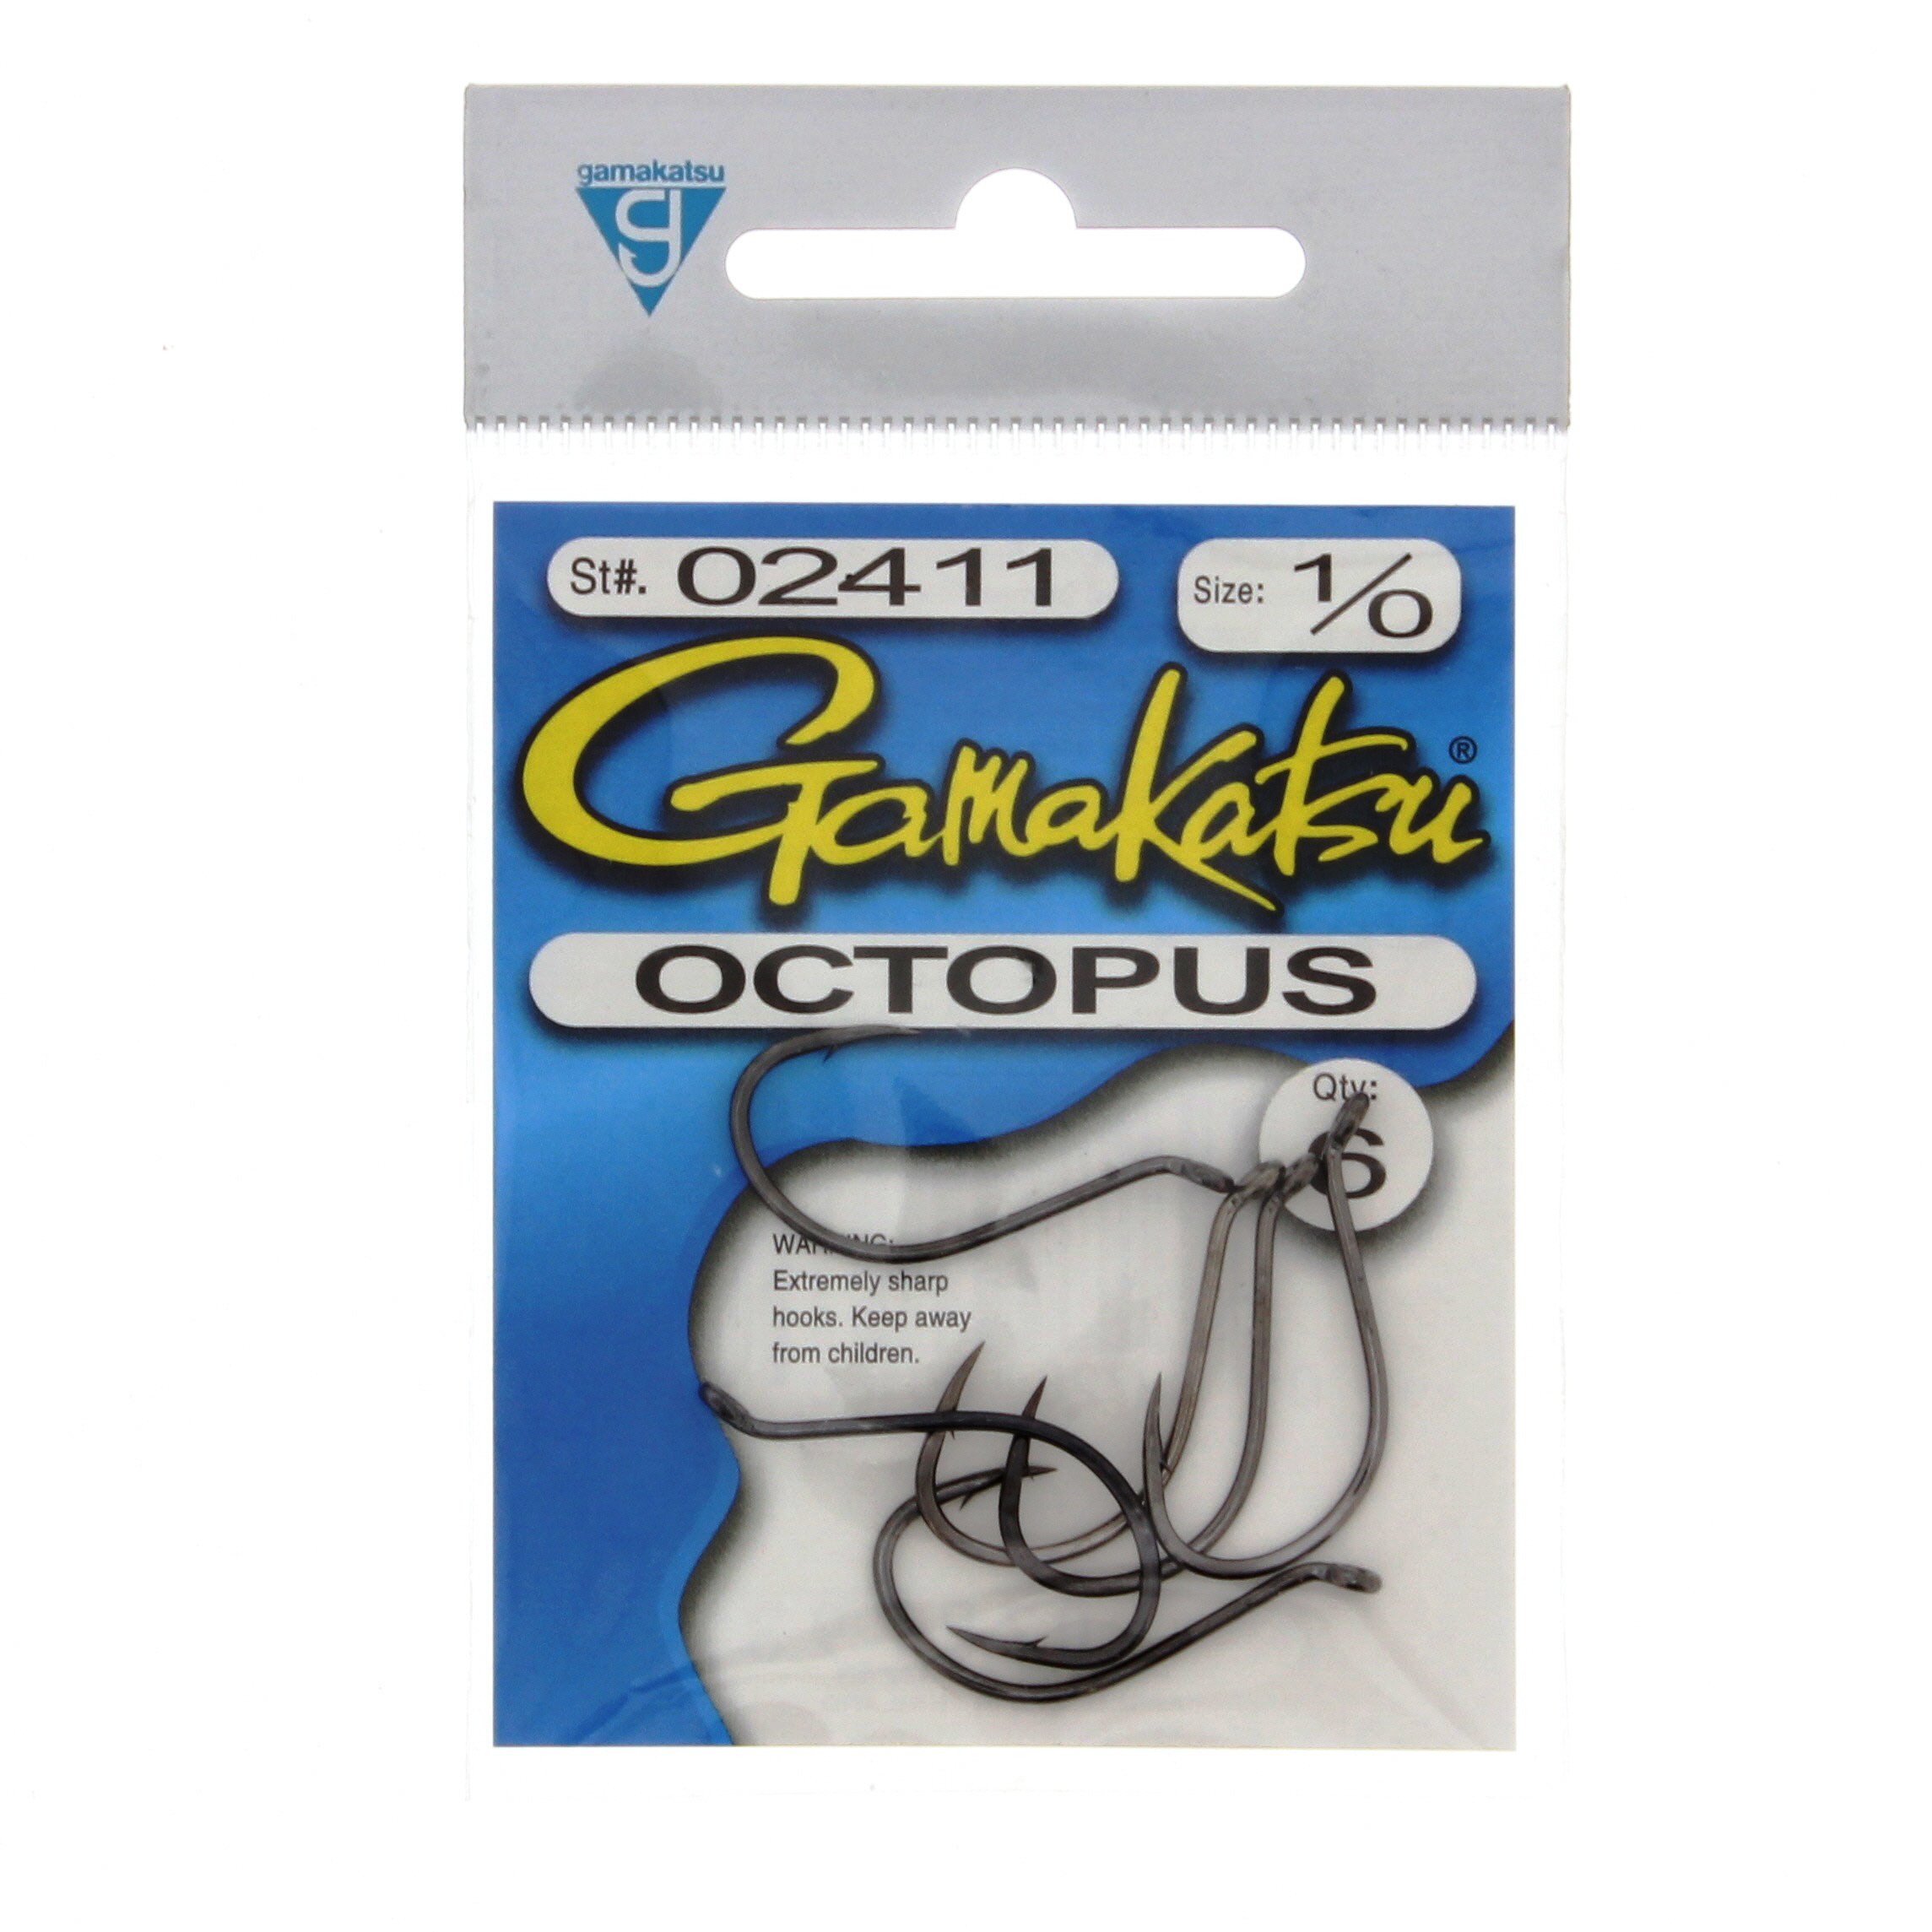 Gamakatsu Octopus NS Black Hook Size 1/0 100 Per Pack 02411-100 